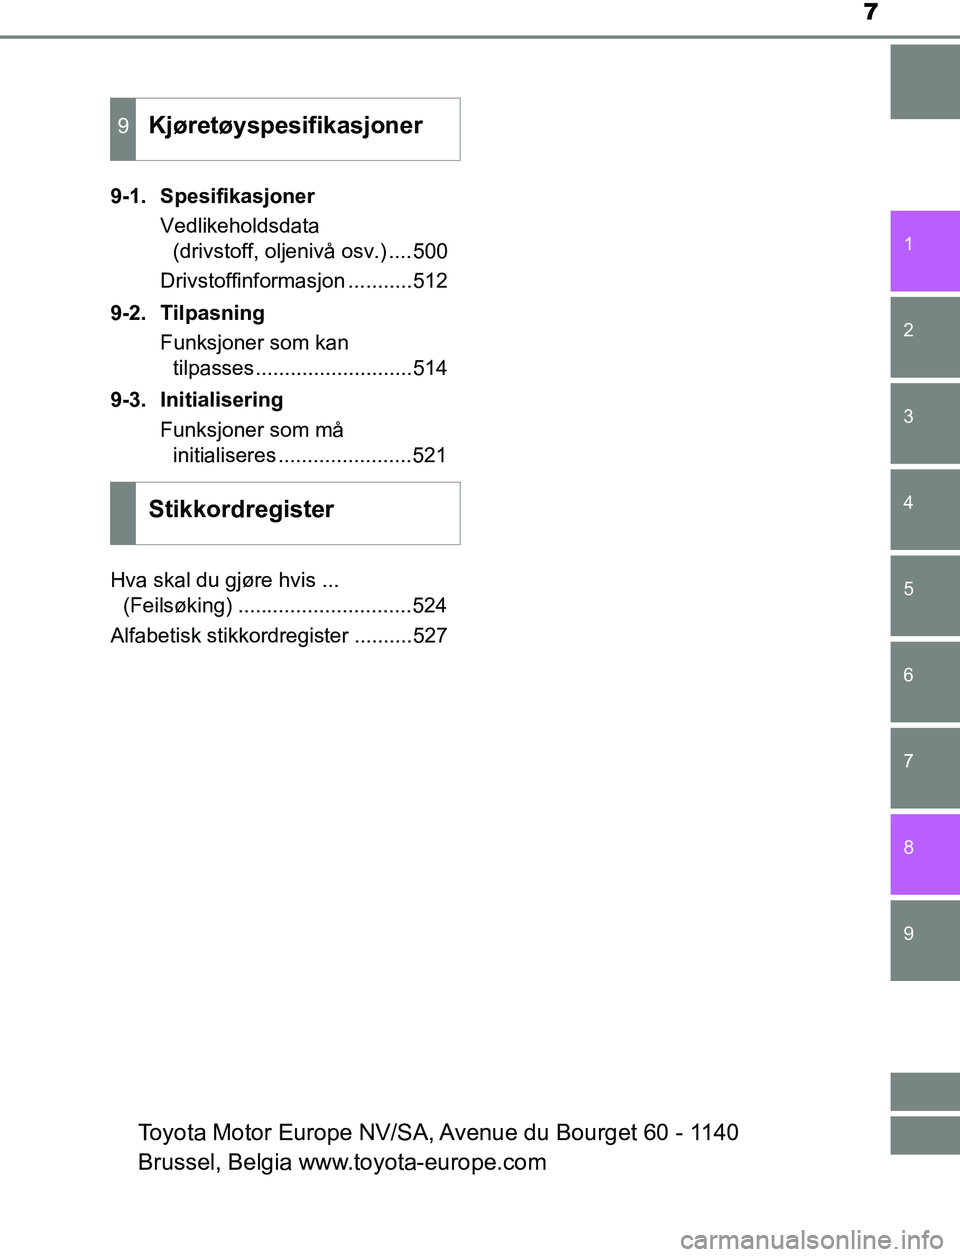 TOYOTA AURIS HYBRID 2016  Instruksjoner for bruk (in Norwegian) 7
1
9 8
7 5 4
3
2
UK AURIS_HV_HB_EE (OM12L07NO)
6
9-1. SpesifikasjonerVedlikeholdsdata (drivstoff, oljenivå osv.) ....500
Drivstoffinformasjon ...........512
9-2. Tilpasning Funksjoner som kan tilpas